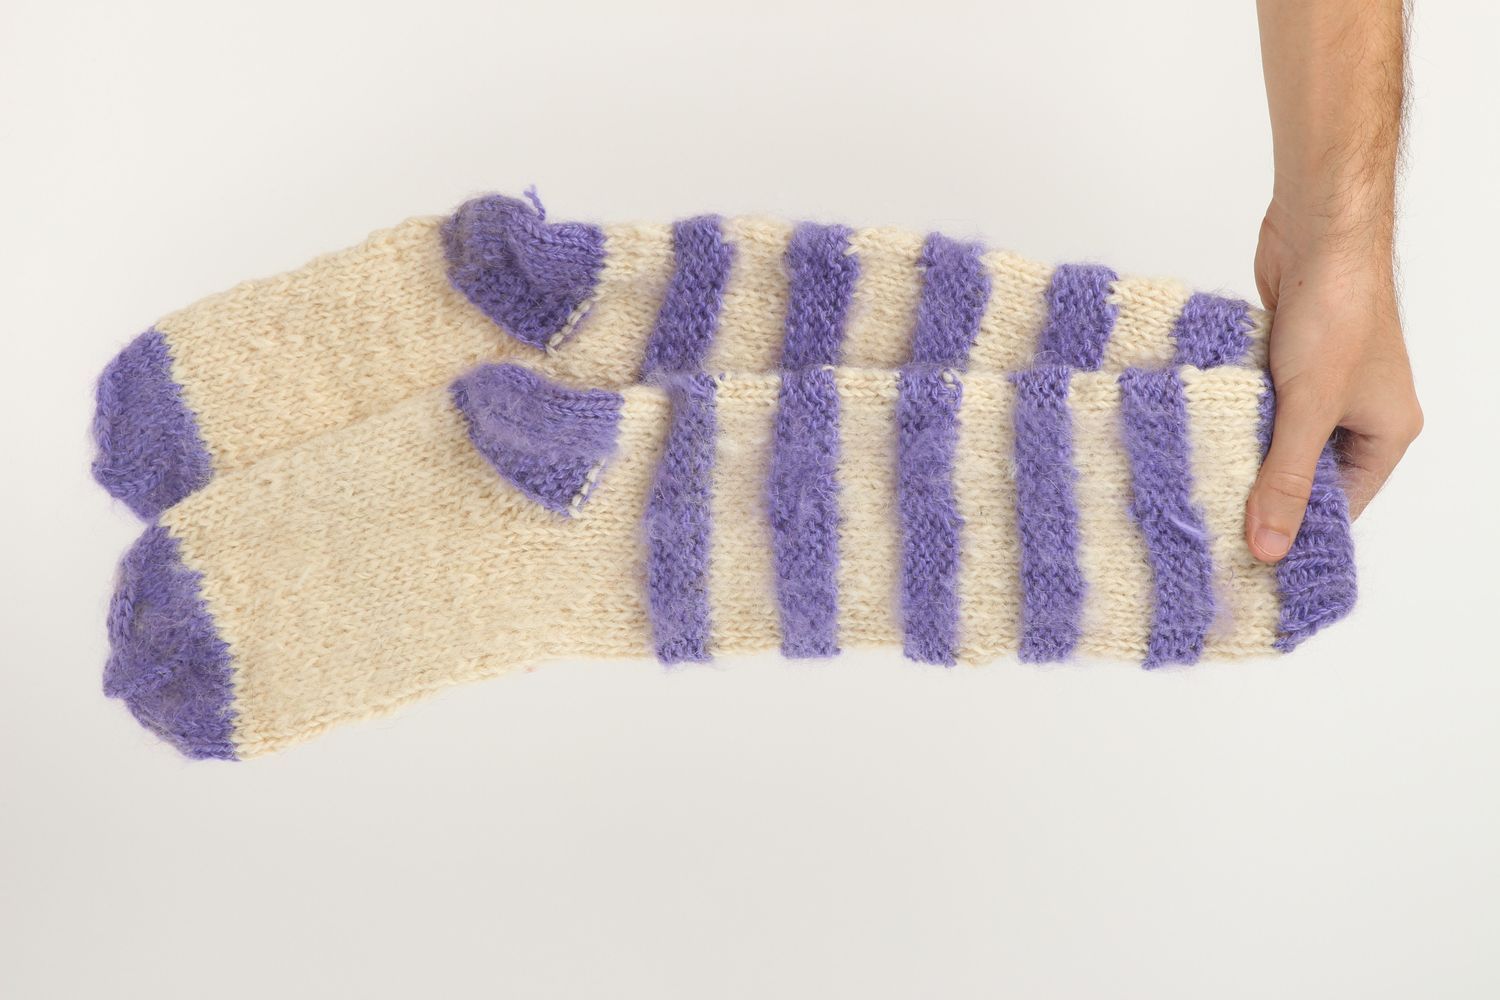 Handmade warm socks wool socks knitted socks for women winter clothing photo 5